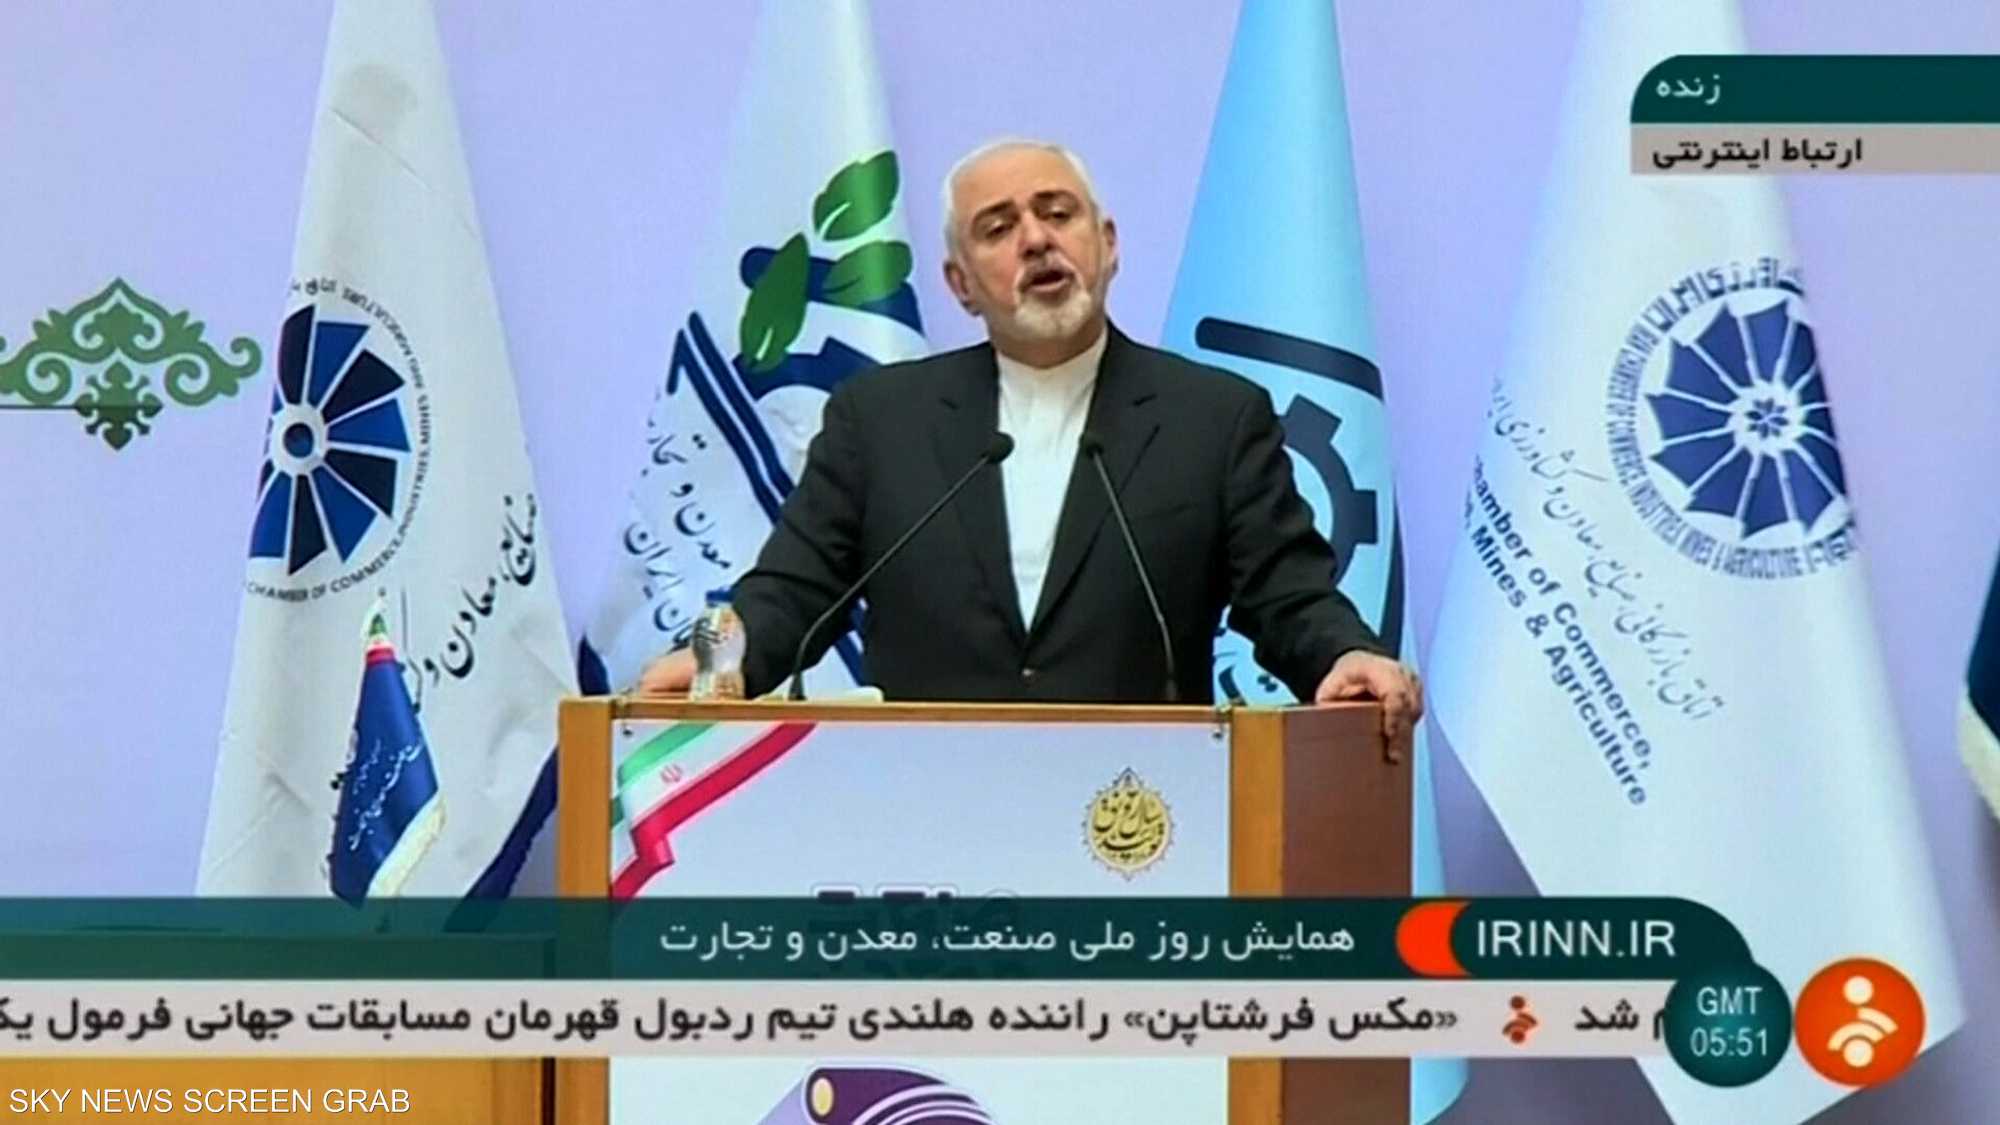 ظريف يعلن استعداد طهران للتفاوض حول صواريخها الباليستية